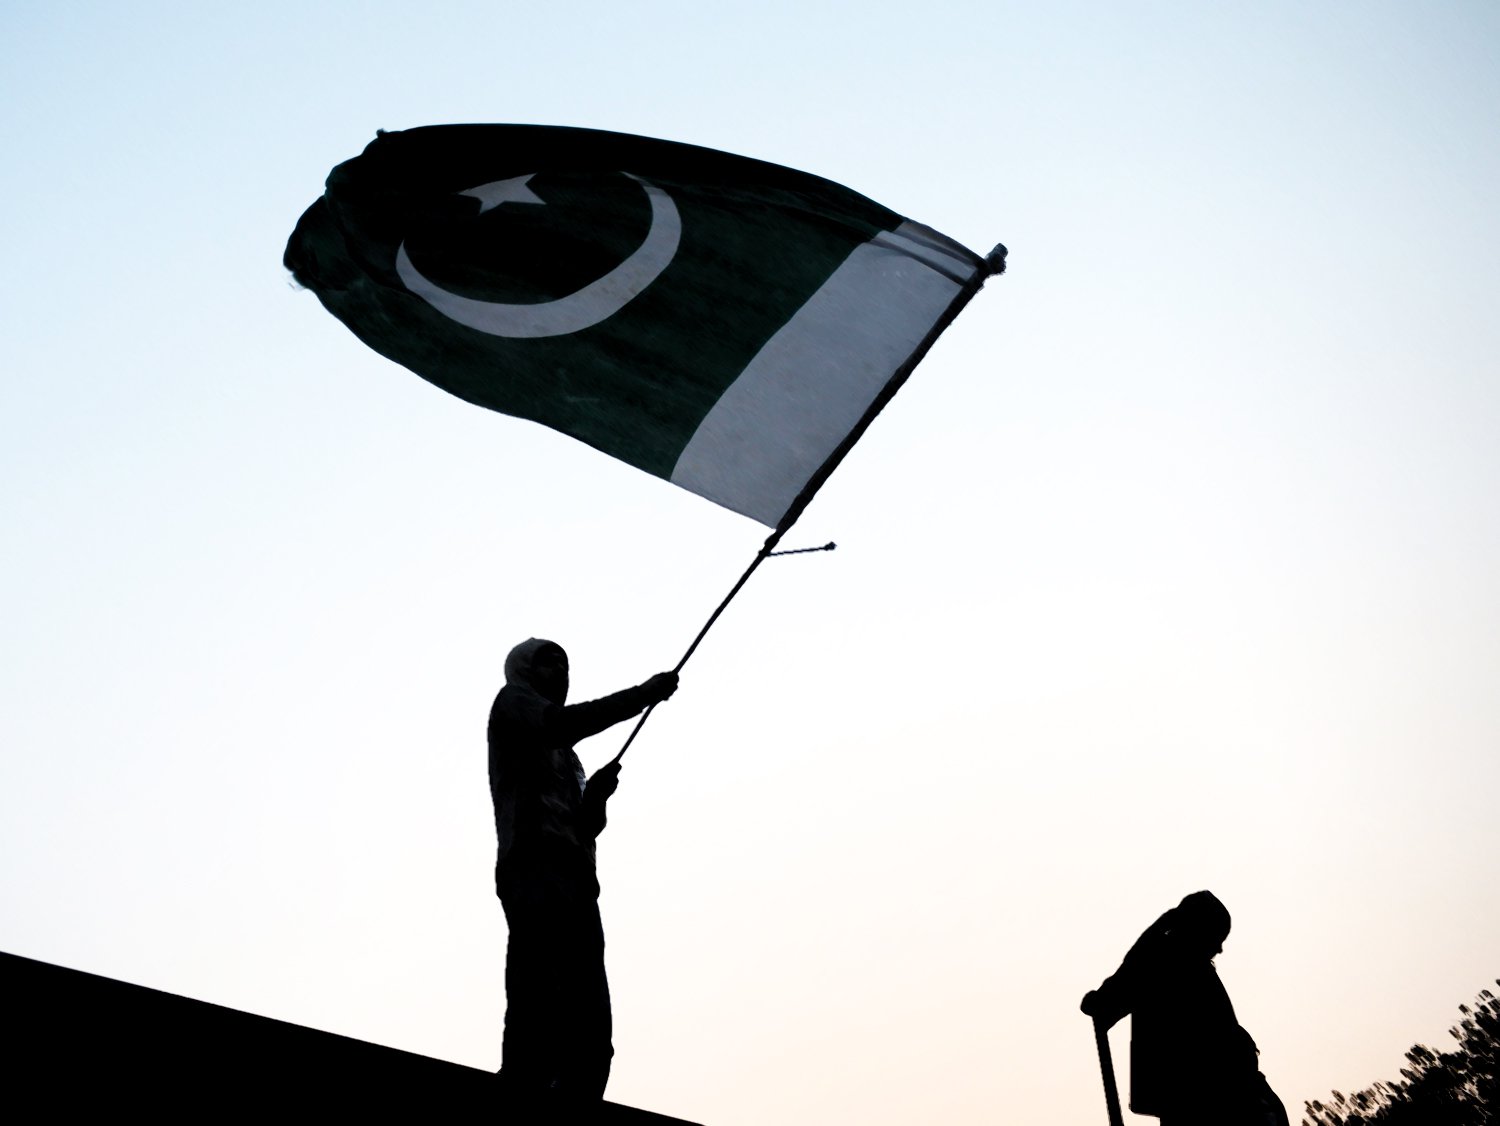 pakistan-flag-afp-2-2-2-2-2-2-3-3-2-2-2-2-2